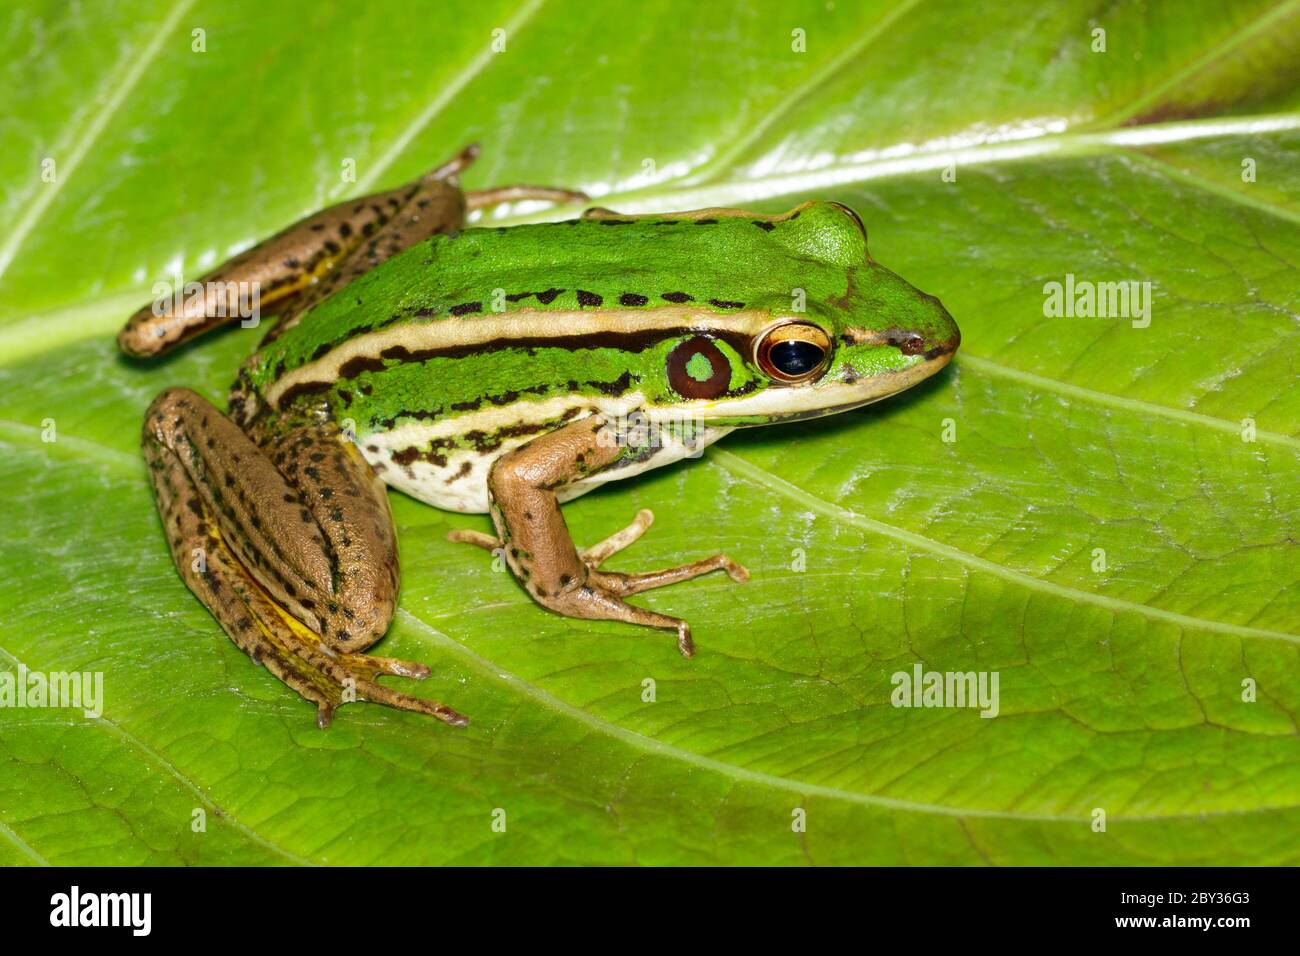 Bild von Reisfeld grünen Frosch oder Green Paddy Frog (Rana erythraea) auf dem grünen Blatt. Amphibien. Tier. Stockfoto